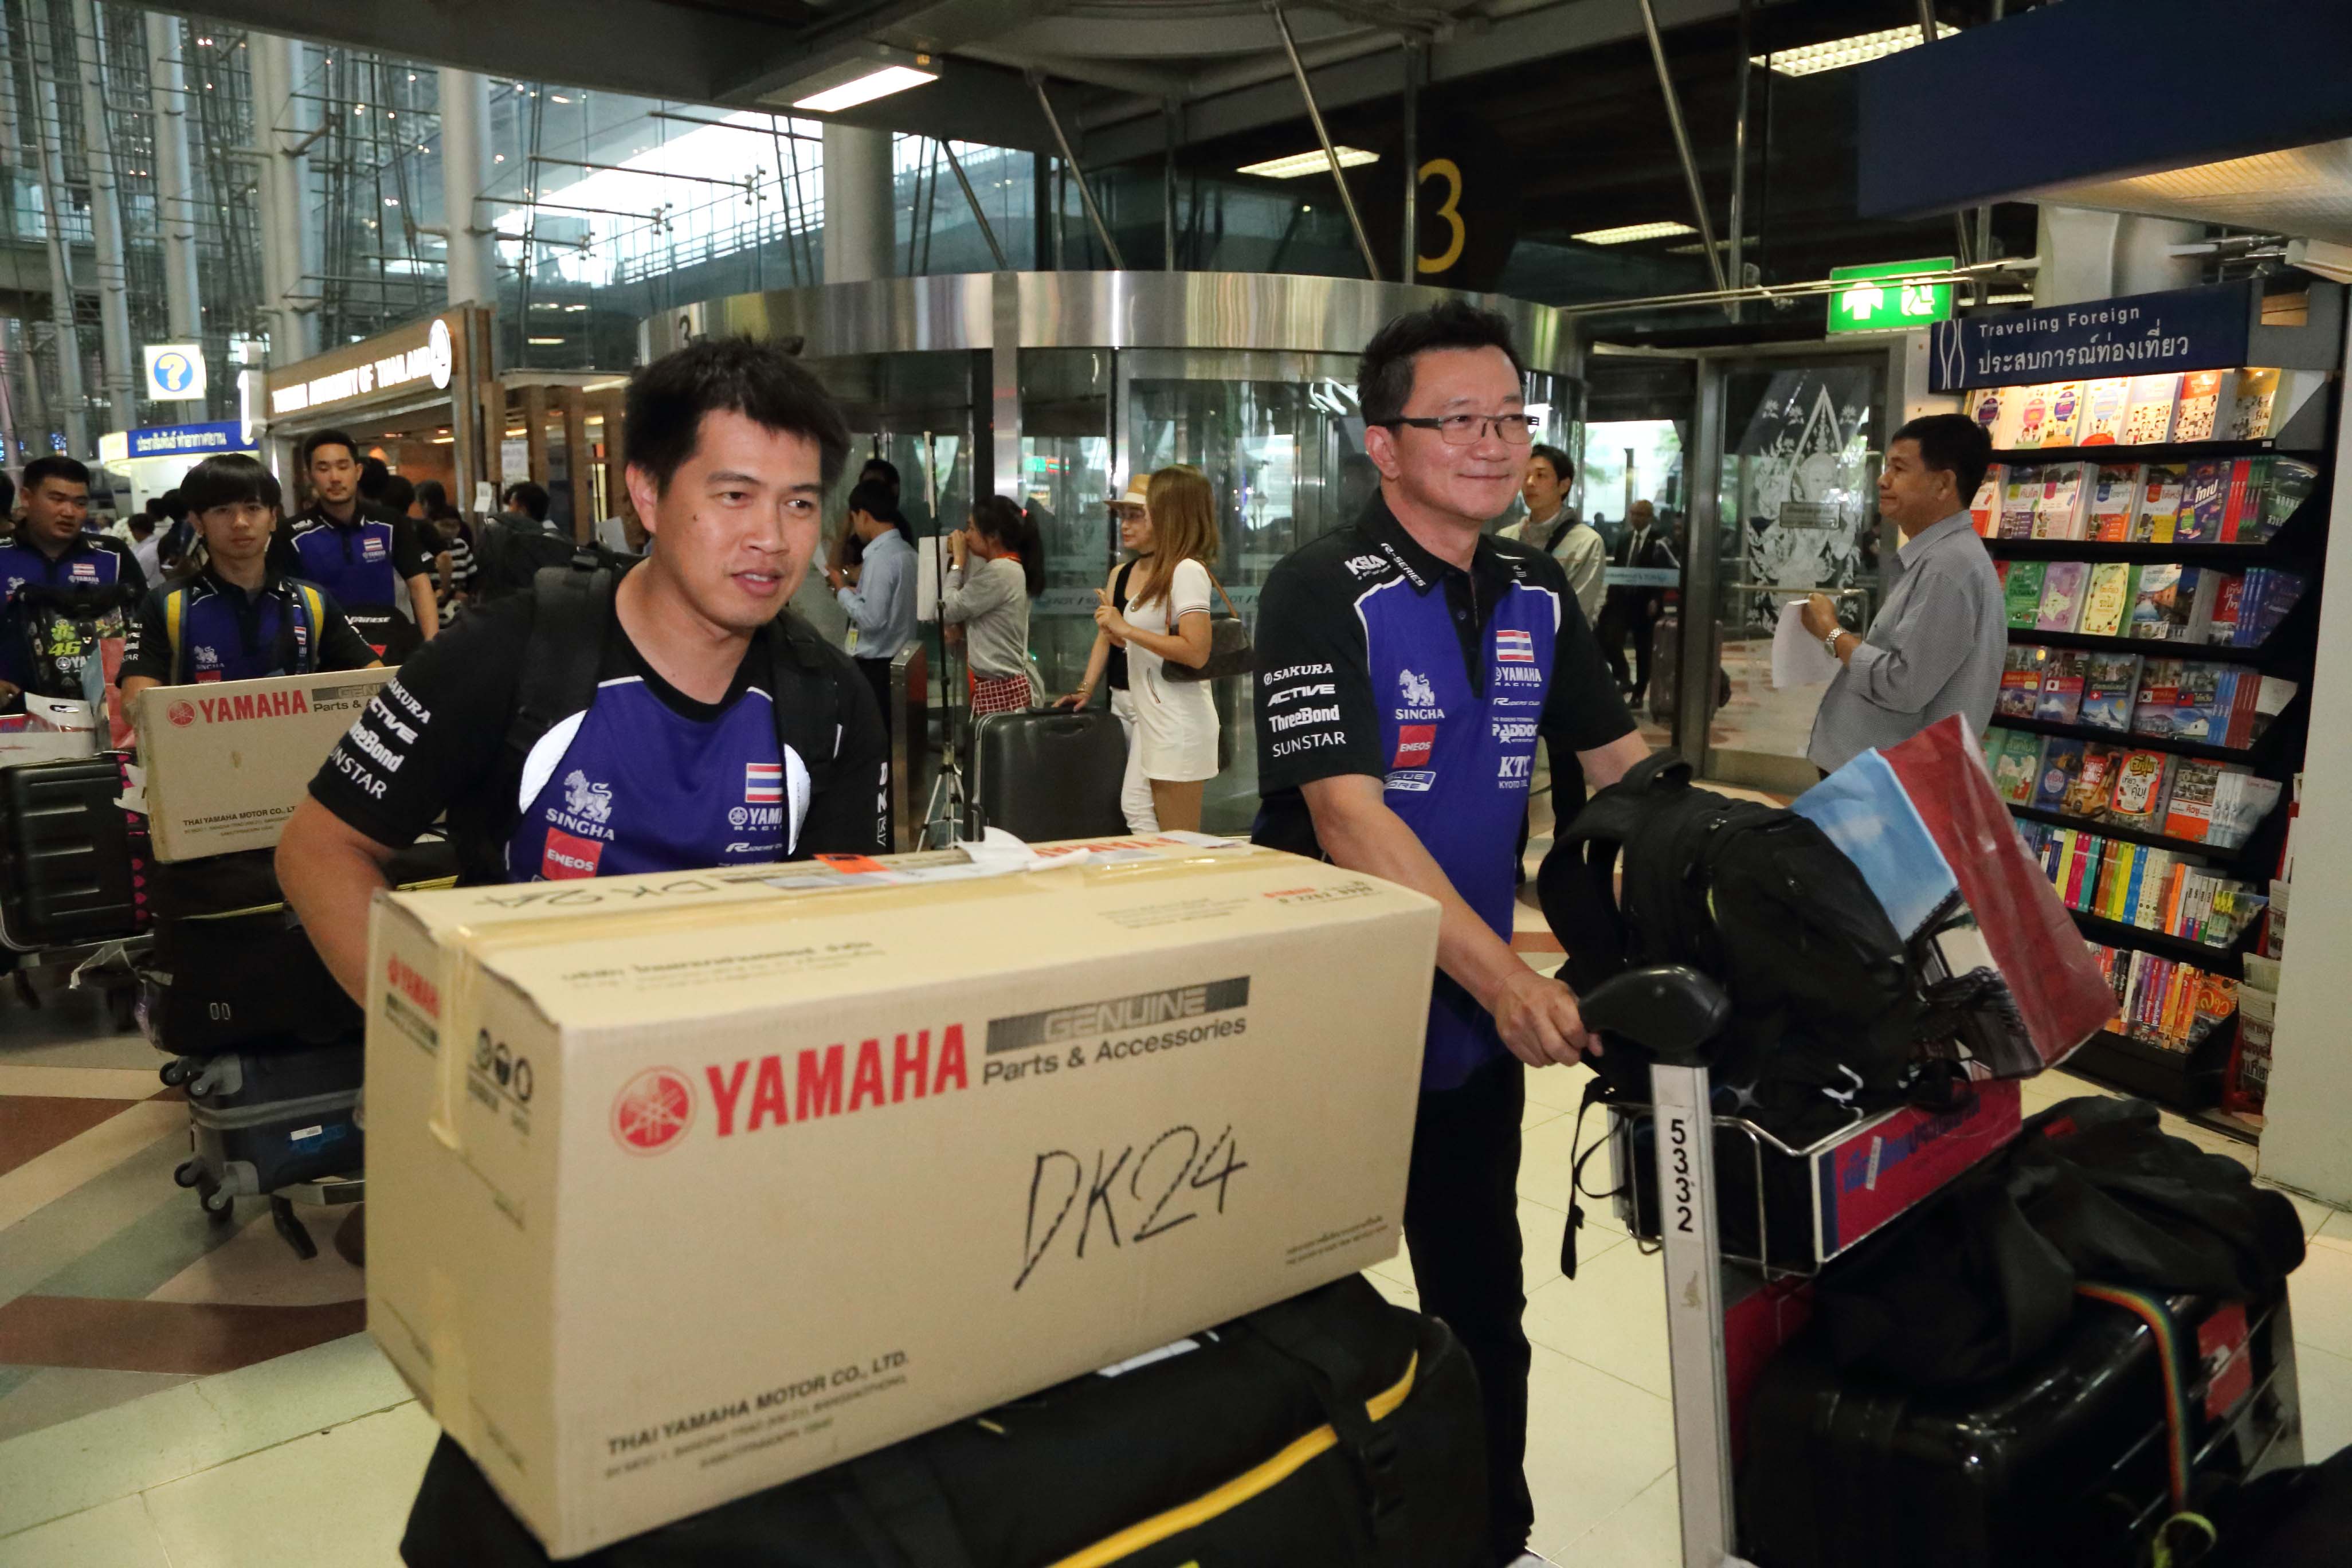 12 ขุนพลนักแข่ง YAMAHA THAILAND RACING TEAM หลังทำผลงานยอดเยี่ยมพร้อมคว้าโพเดี้ยมศึกชิงแชมป์กลับสู่เมืองไทยอย่างภาคภูมิ 